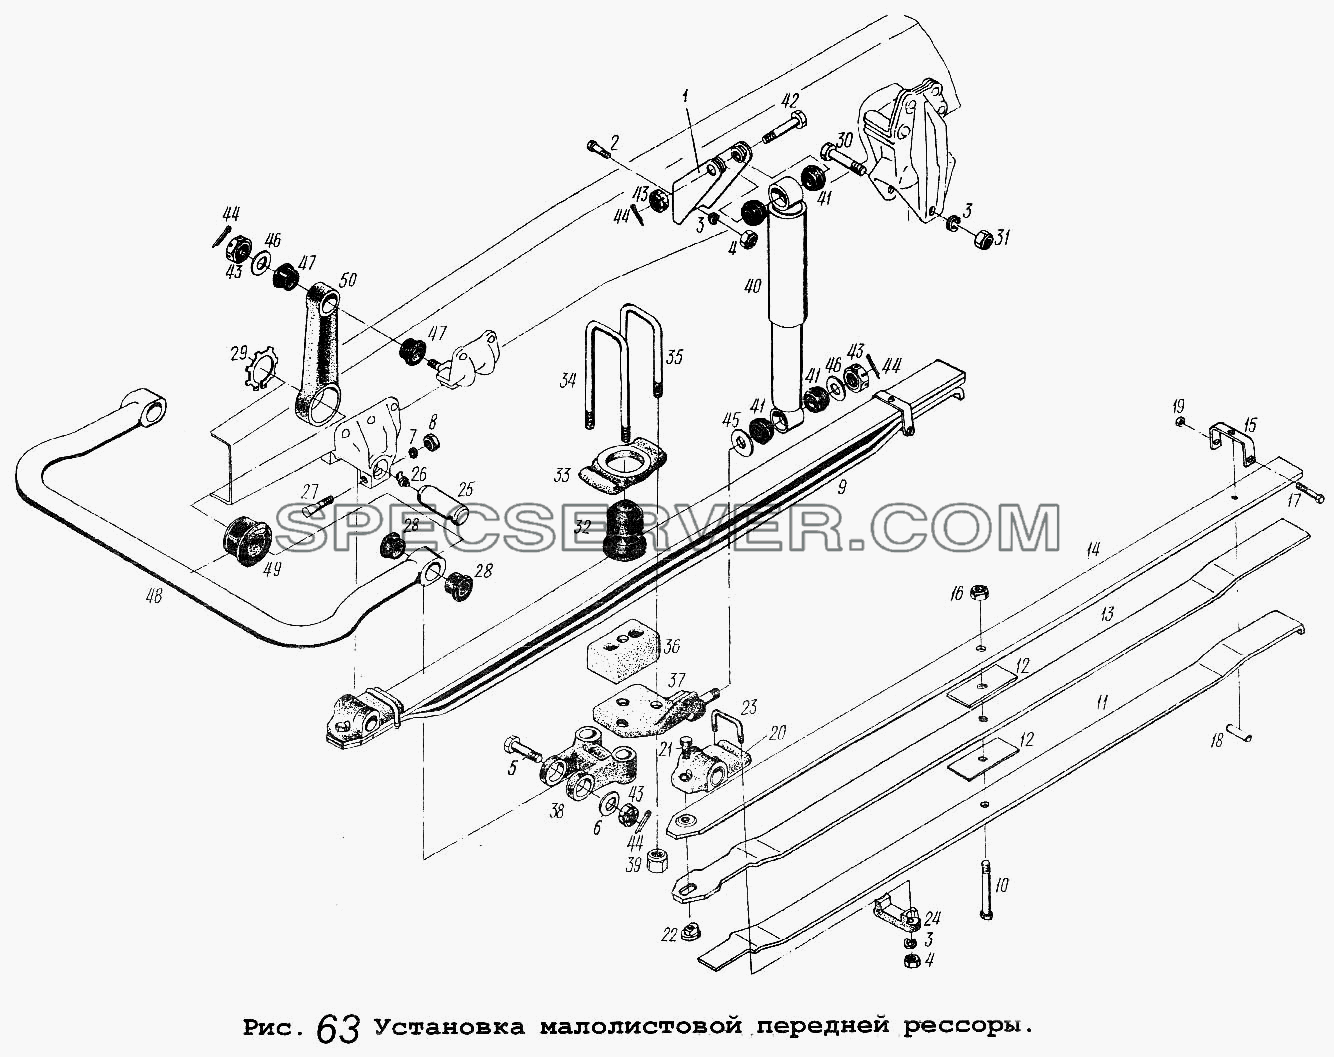 Установка малолистовой передней рессоры для МАЗ-54323 (список запасных частей)